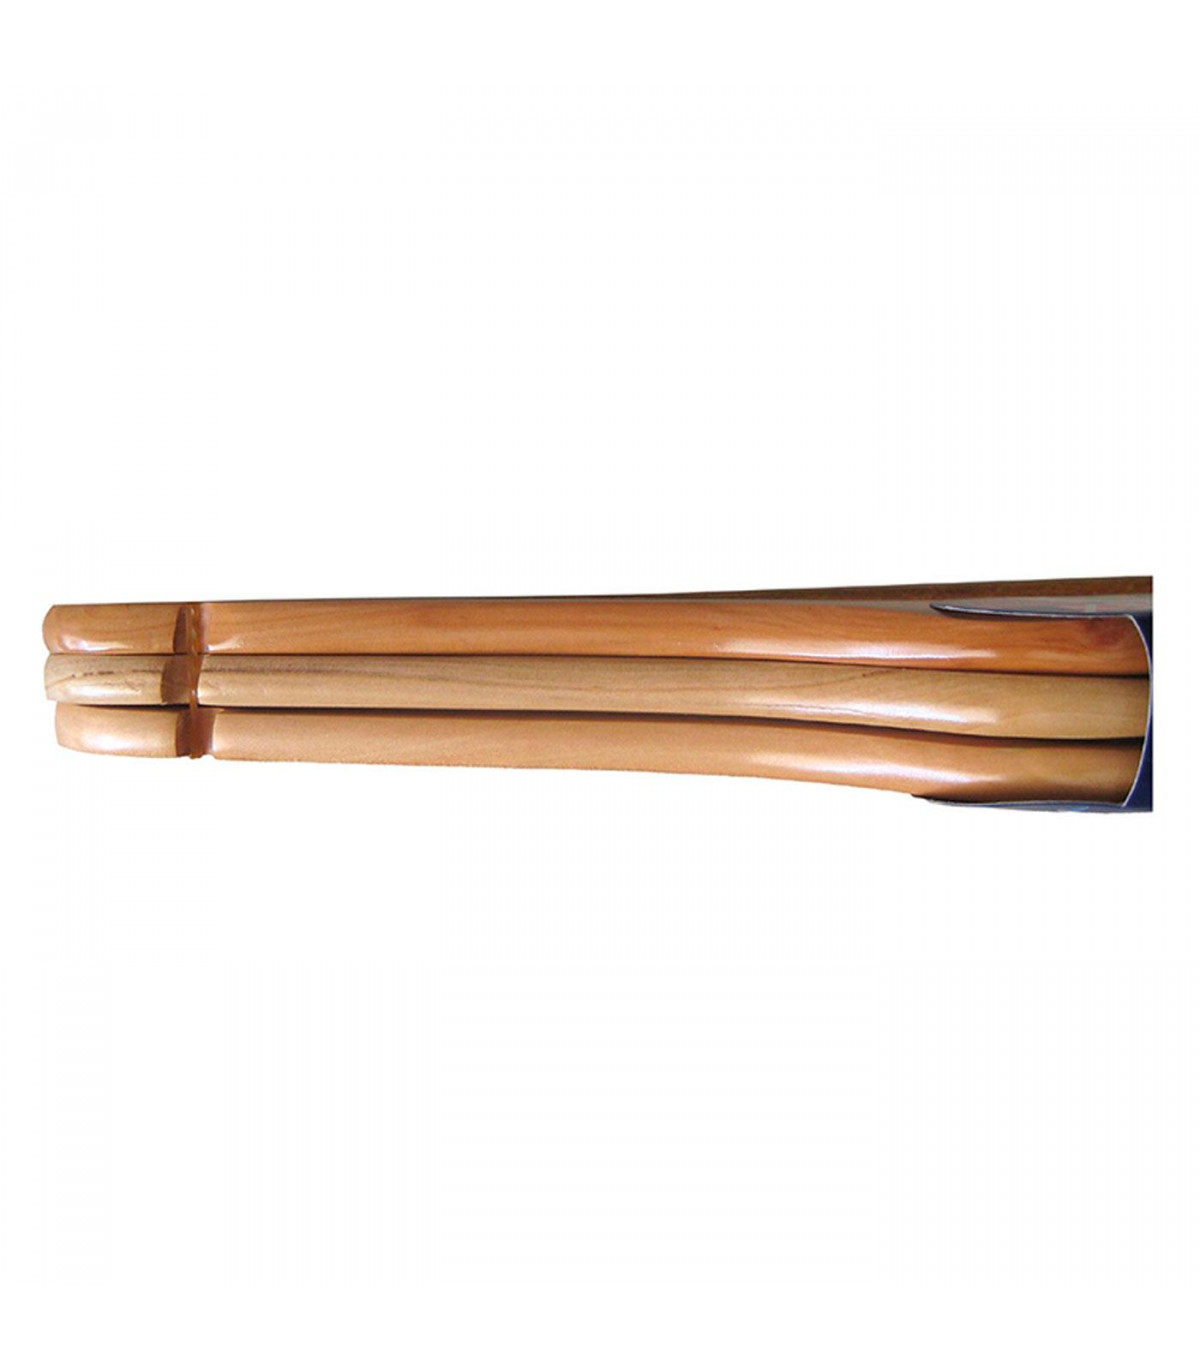 Tradineur - Pack de 3 perchas de madera con pinzas metálicas para